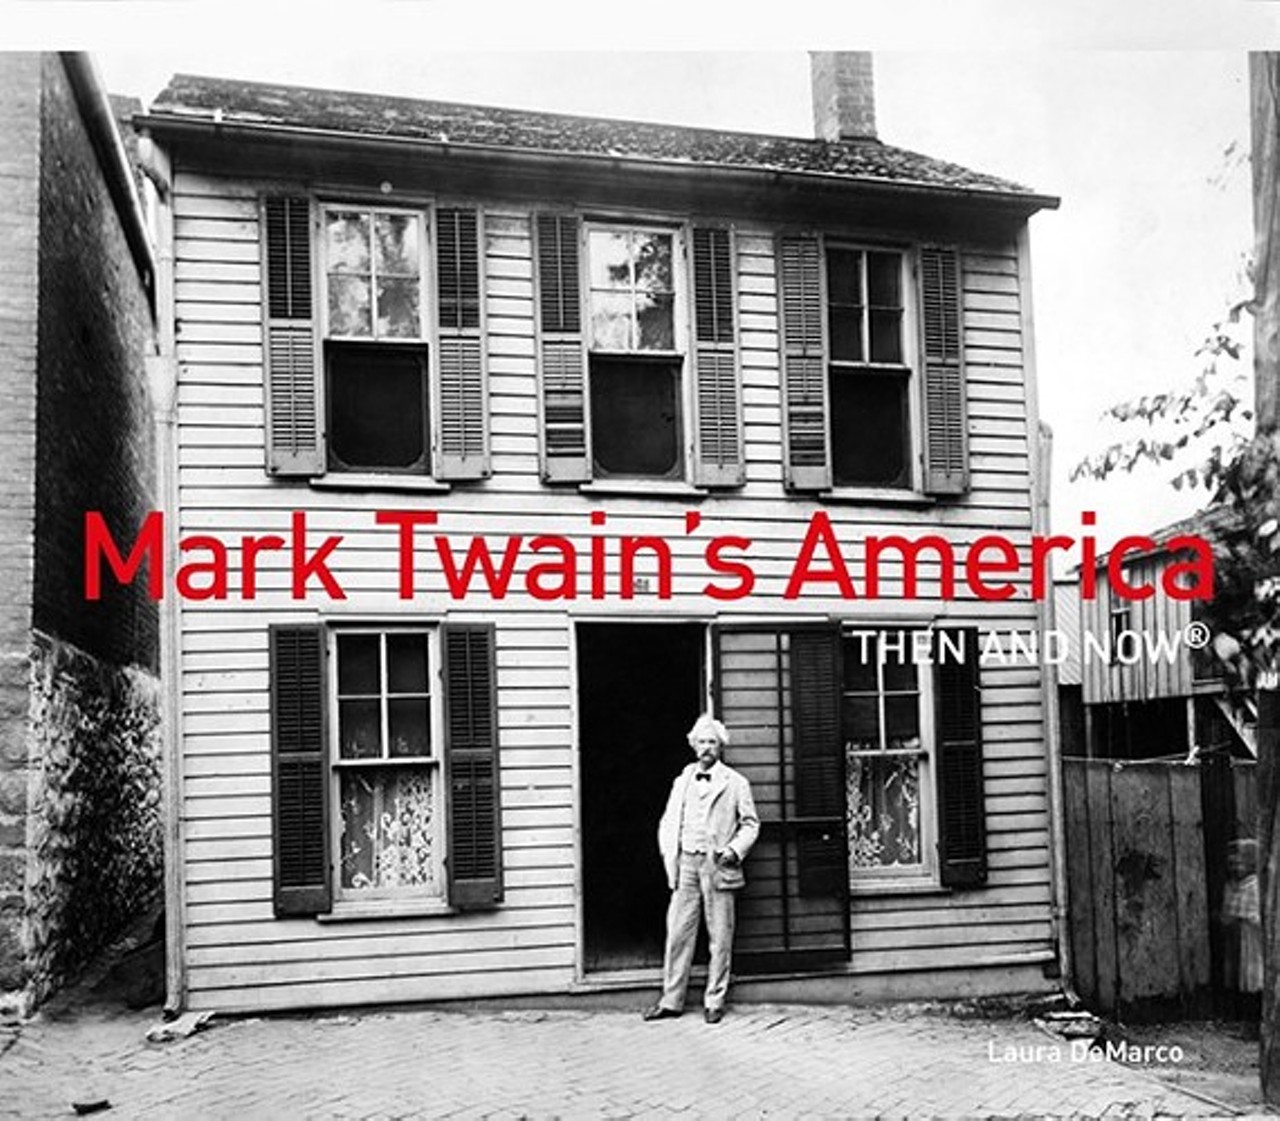 Laura DeMarco Presents Mark Twain&#146;s America 
Sat, Nov. 9
Book cover art